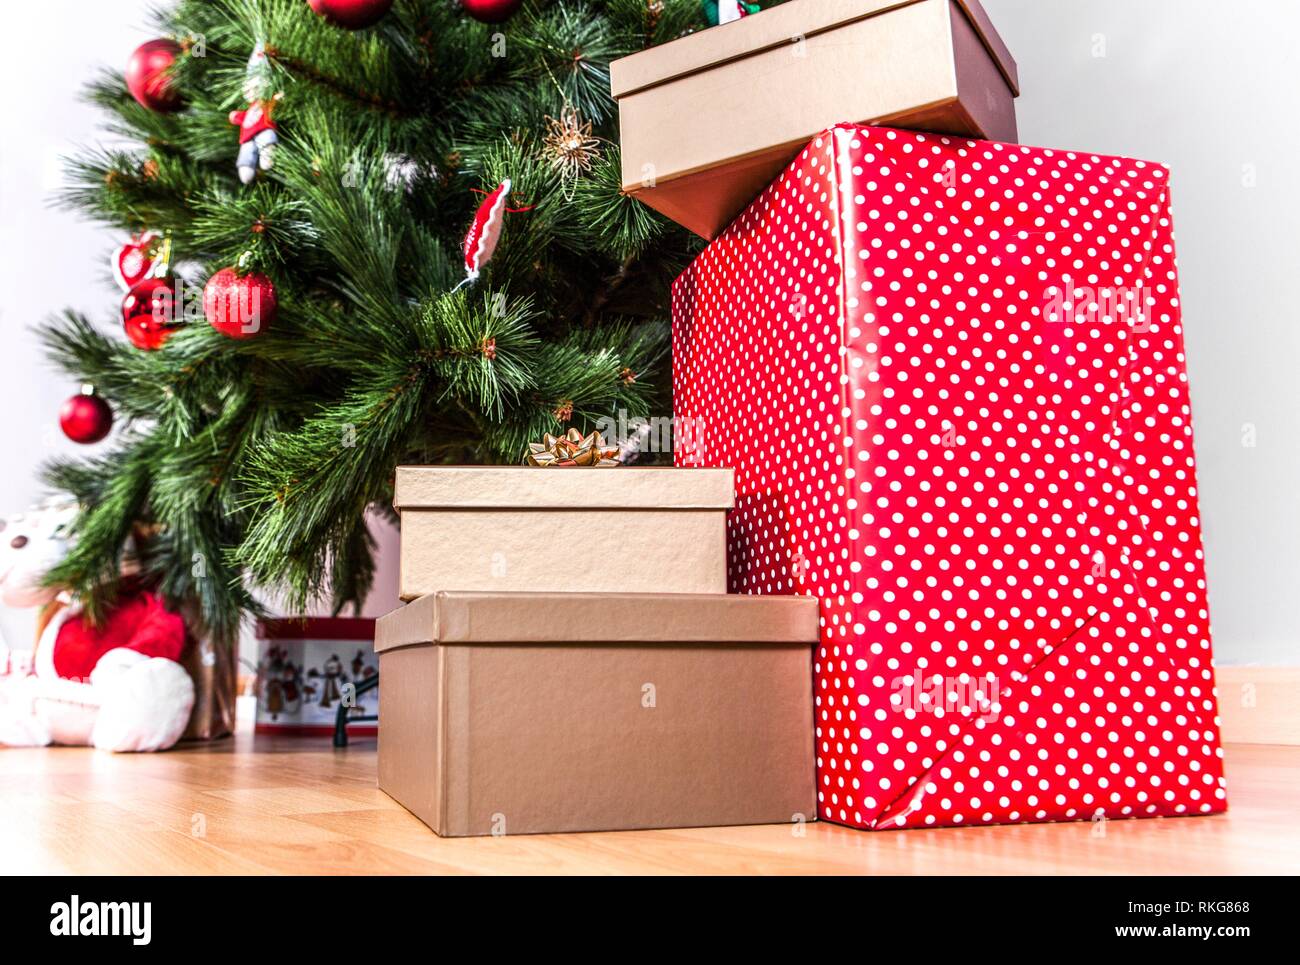 Cajas de regalo en el suelo sobre un árbol de Navidad de fondo. Buen año nuevo espíritu. Foto de stock